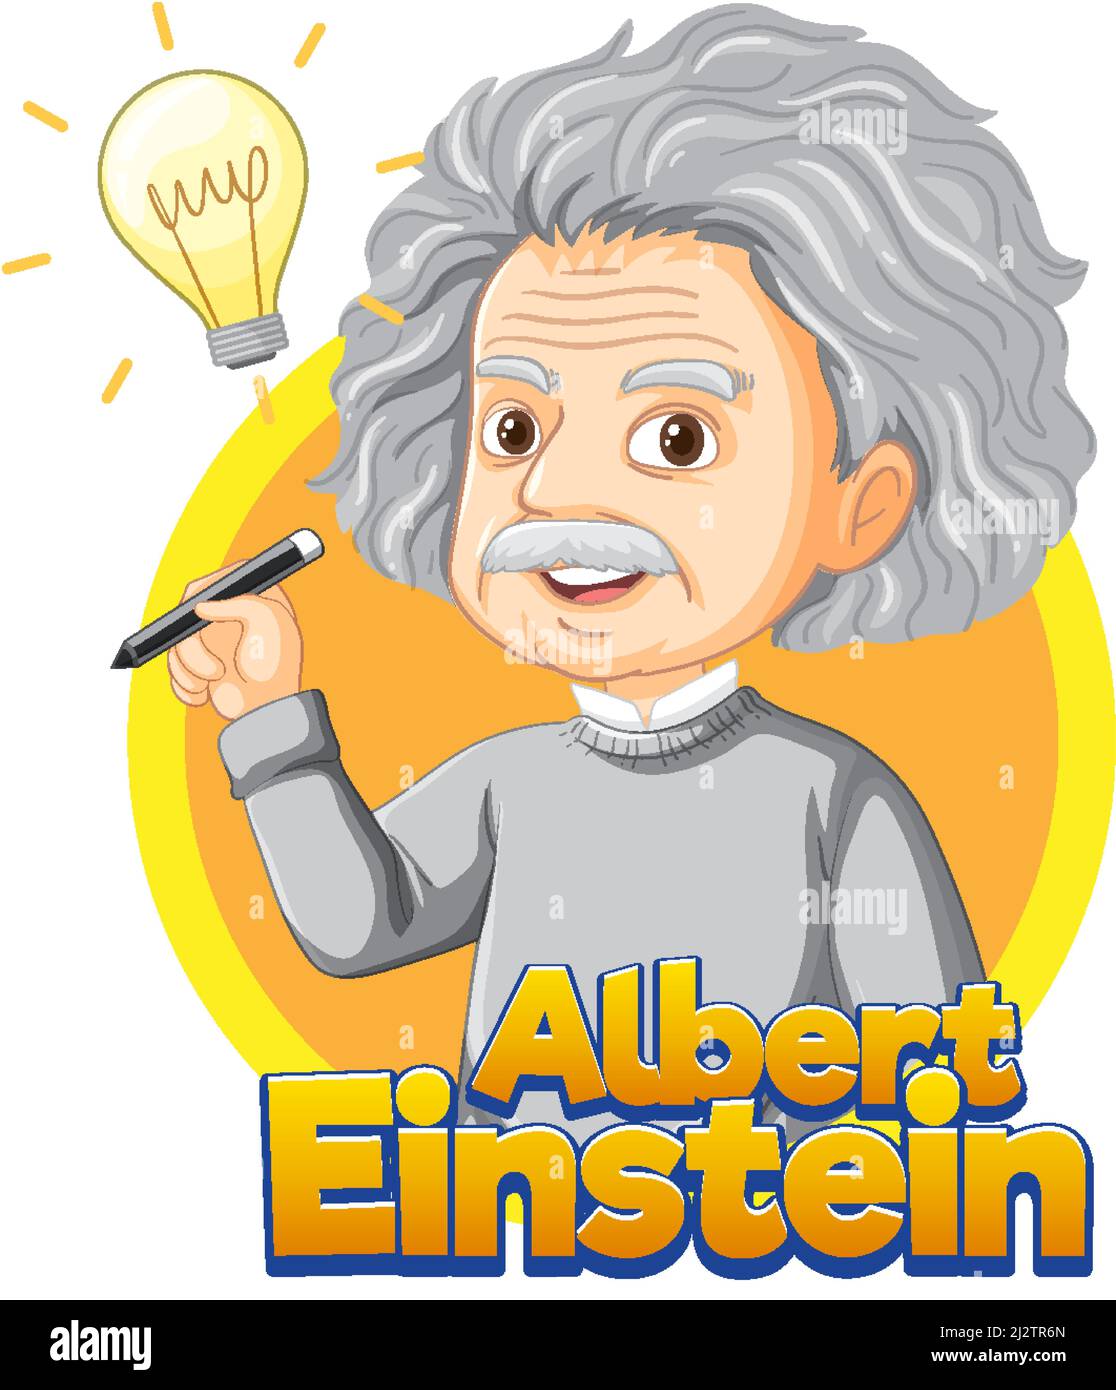 Portrait of Albert Einstein in cartoon style illustration Stock Vector  Image & Art - Alamy